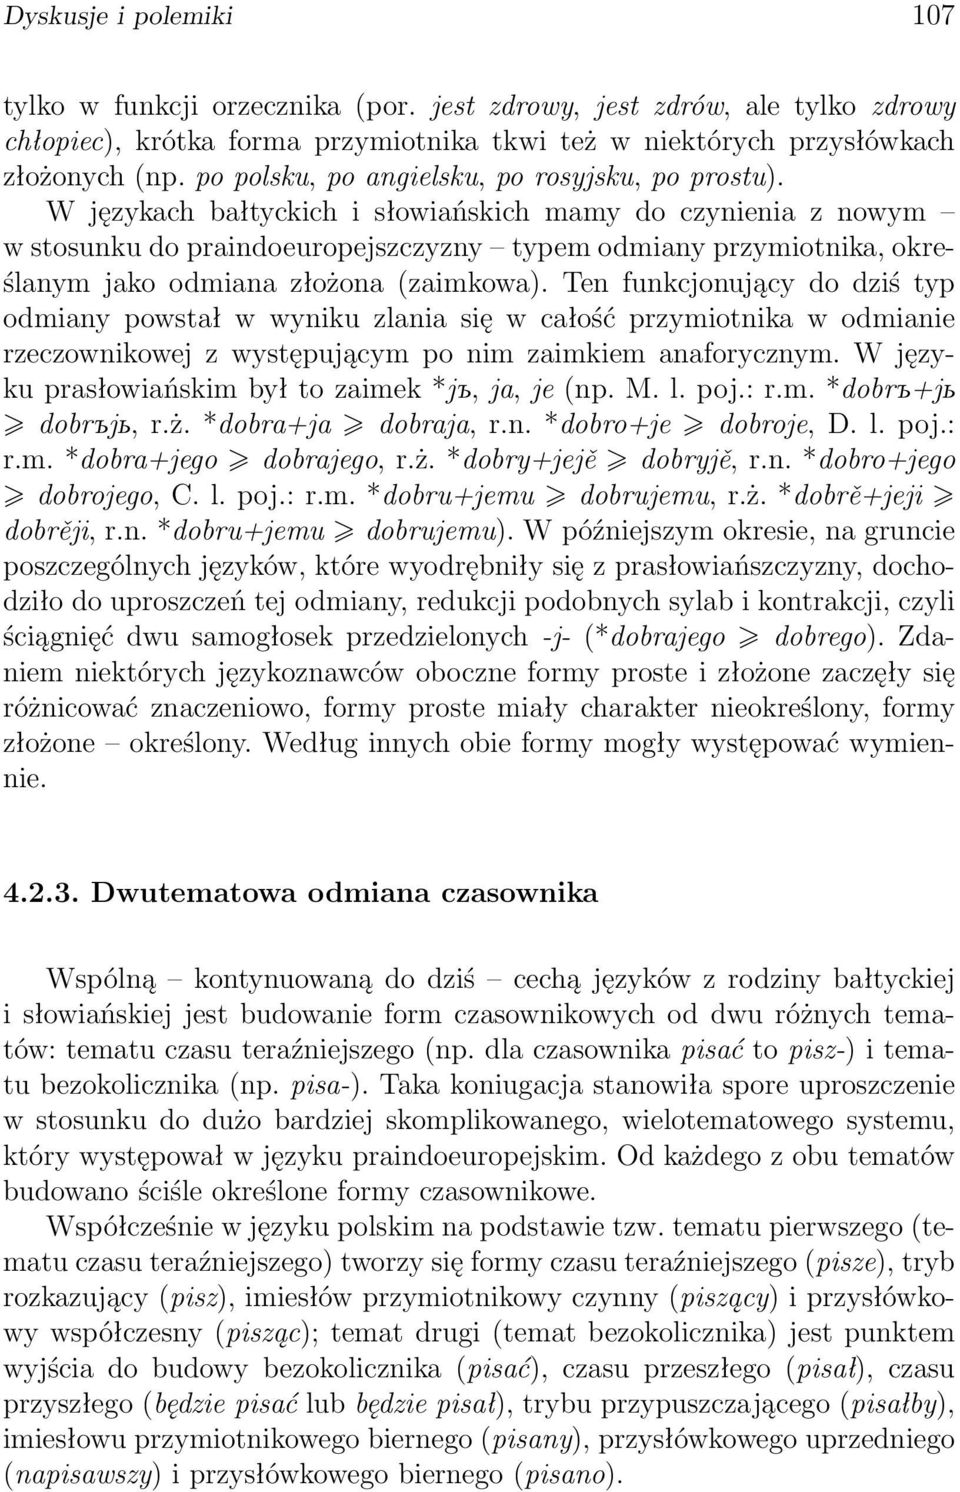 W językach bałtyckich i słowiańskich mamy do czynienia z nowym w stosunku do praindoeuropejszczyzny typem odmiany przymiotnika, określanym jako odmiana złożona (zaimkowa).